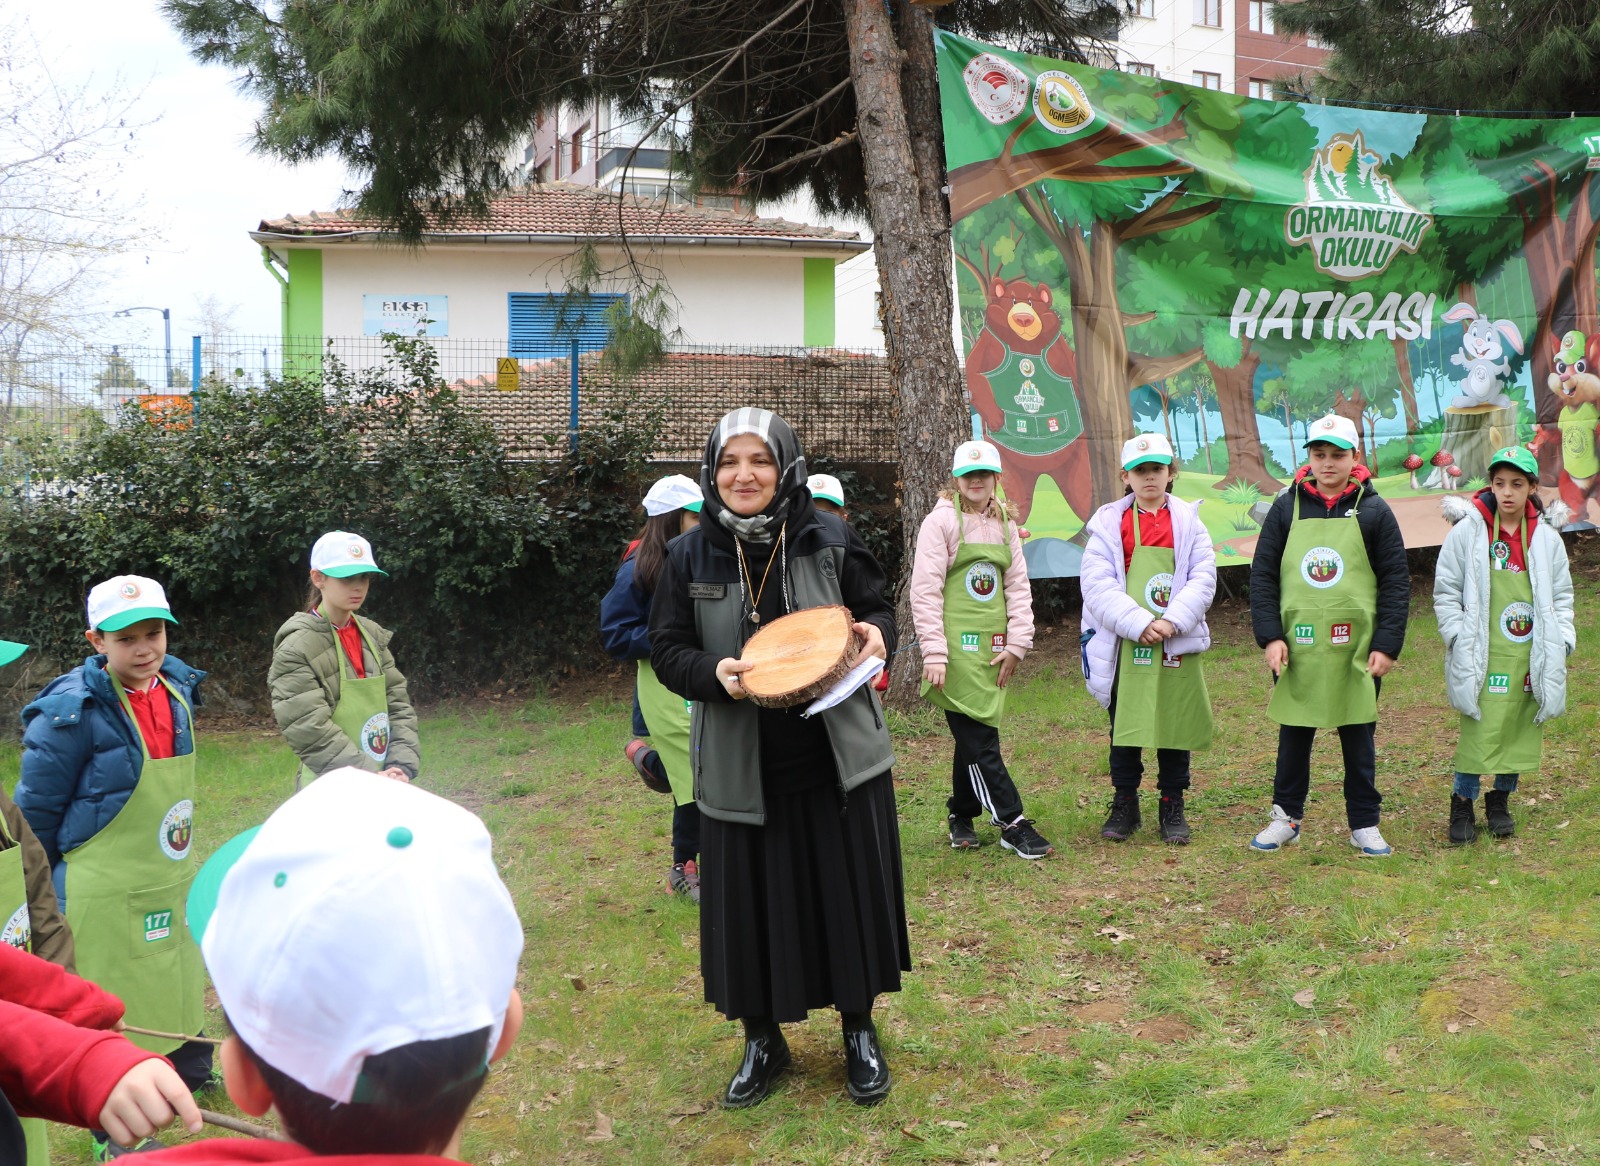 Trabzon’da Minik Sincaplar Trabzon Ormancılık Okulu kayıtları başladı